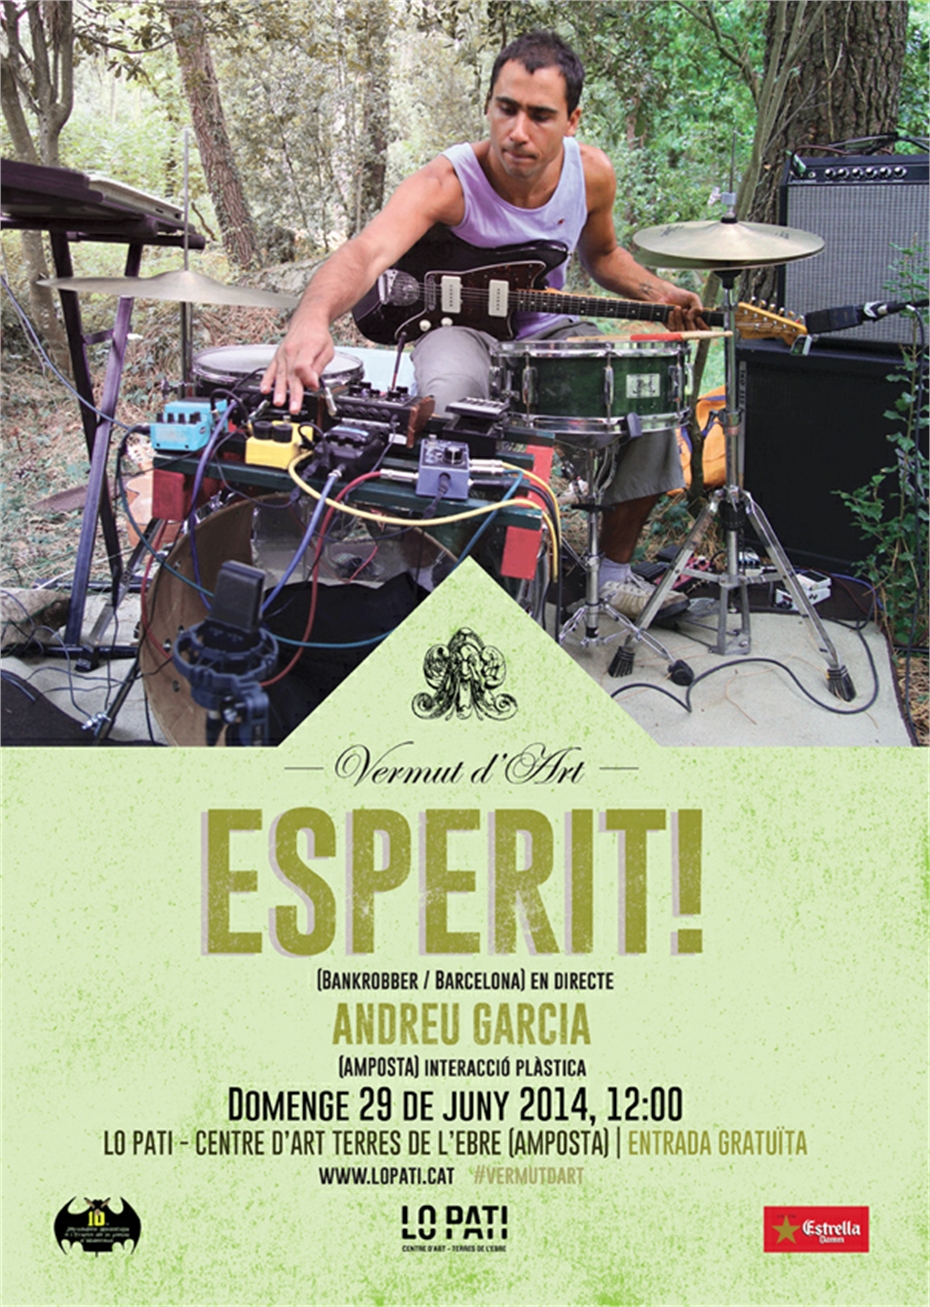 Poster Esperit(1).jpg - 973.17 KB